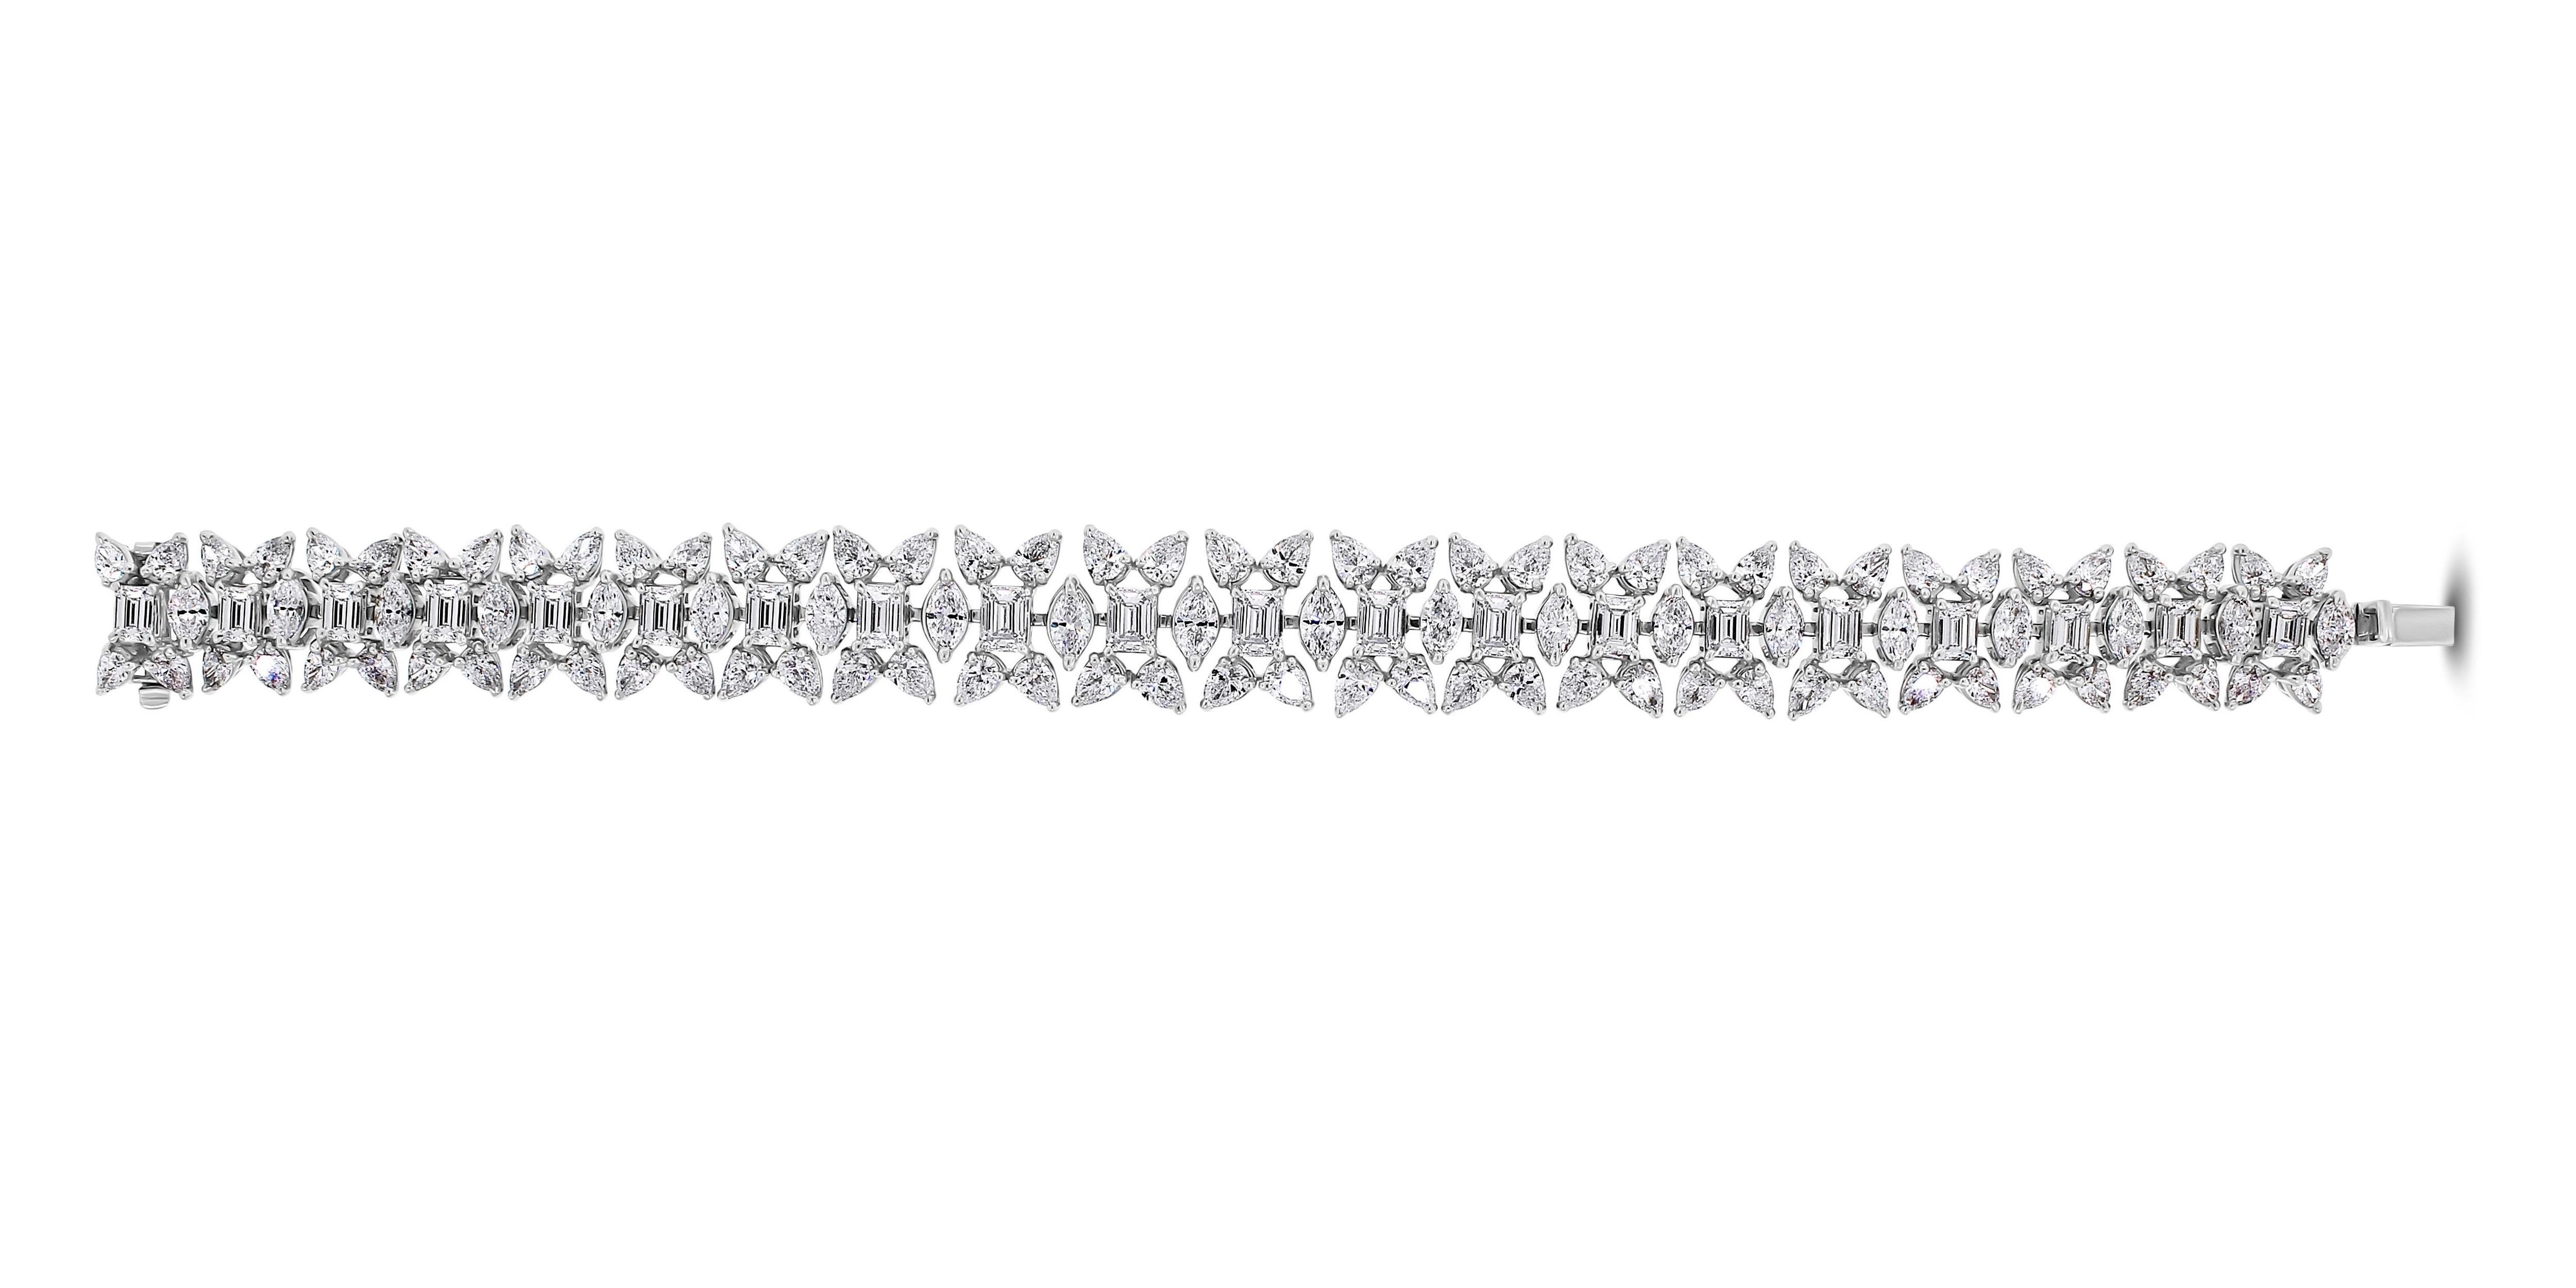 Fabriqué à la perfection, le bracelet Misha est un véritable coup de foudre avec ses diamants cristallins taille émeraude, poire et marquise. Ses diamants de haute qualité et sa fabrication souple laissent les gens captivés et hypnotisés par la